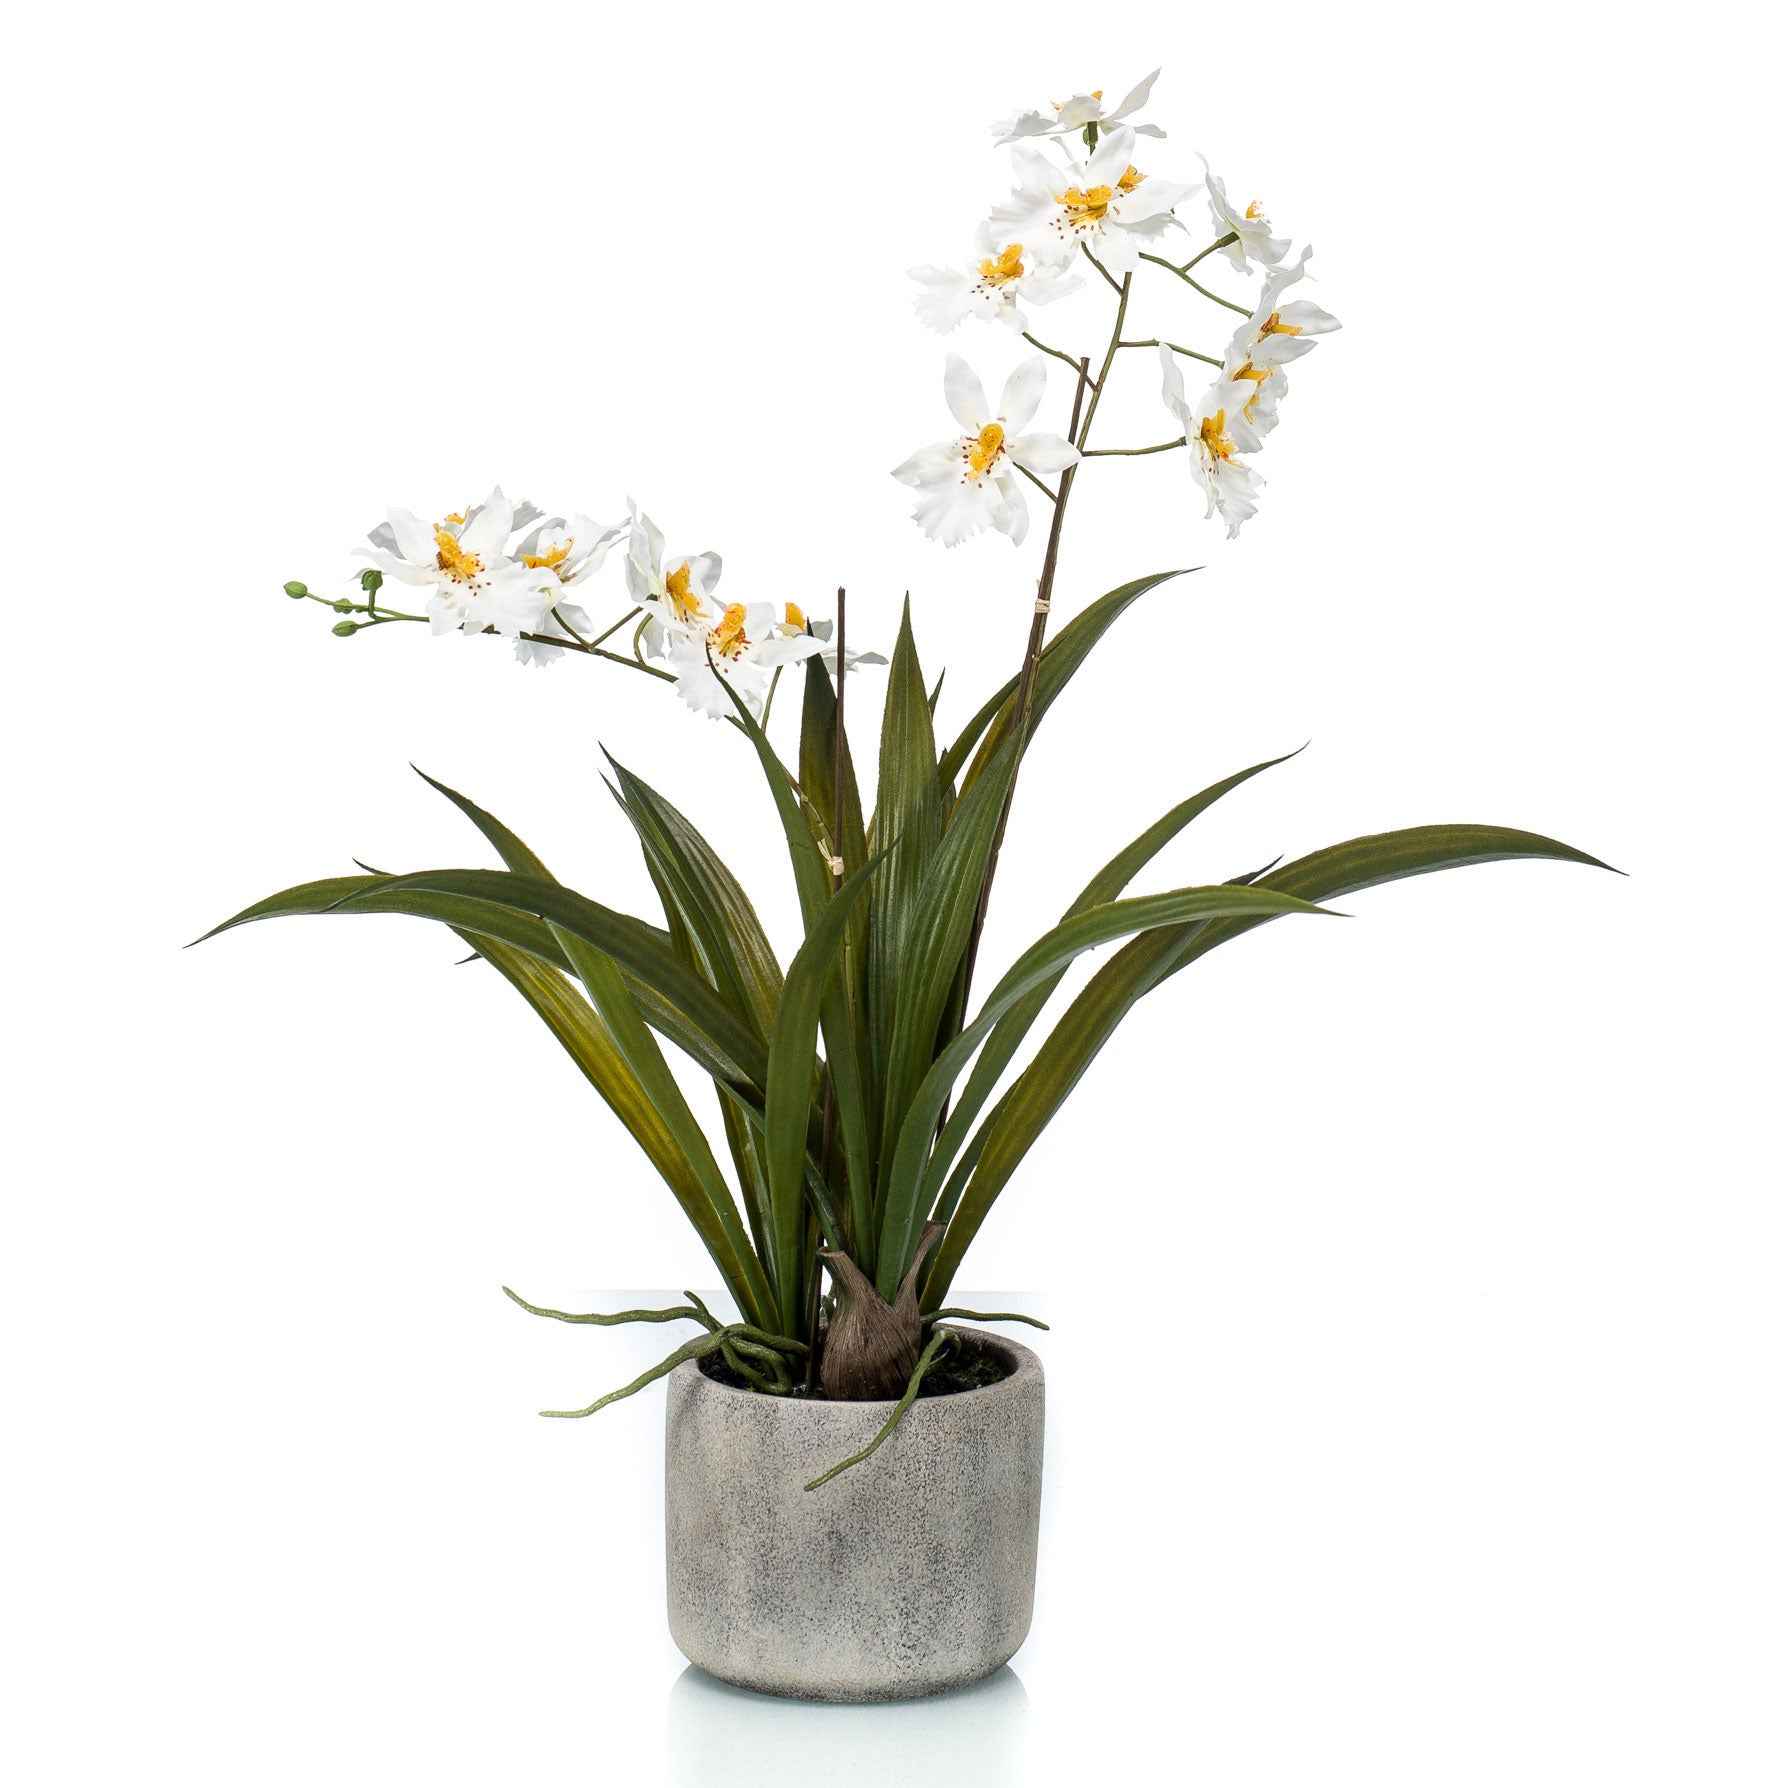 Plante artificielle Orchidée avec cache-pot céramique - Plantes artificielles